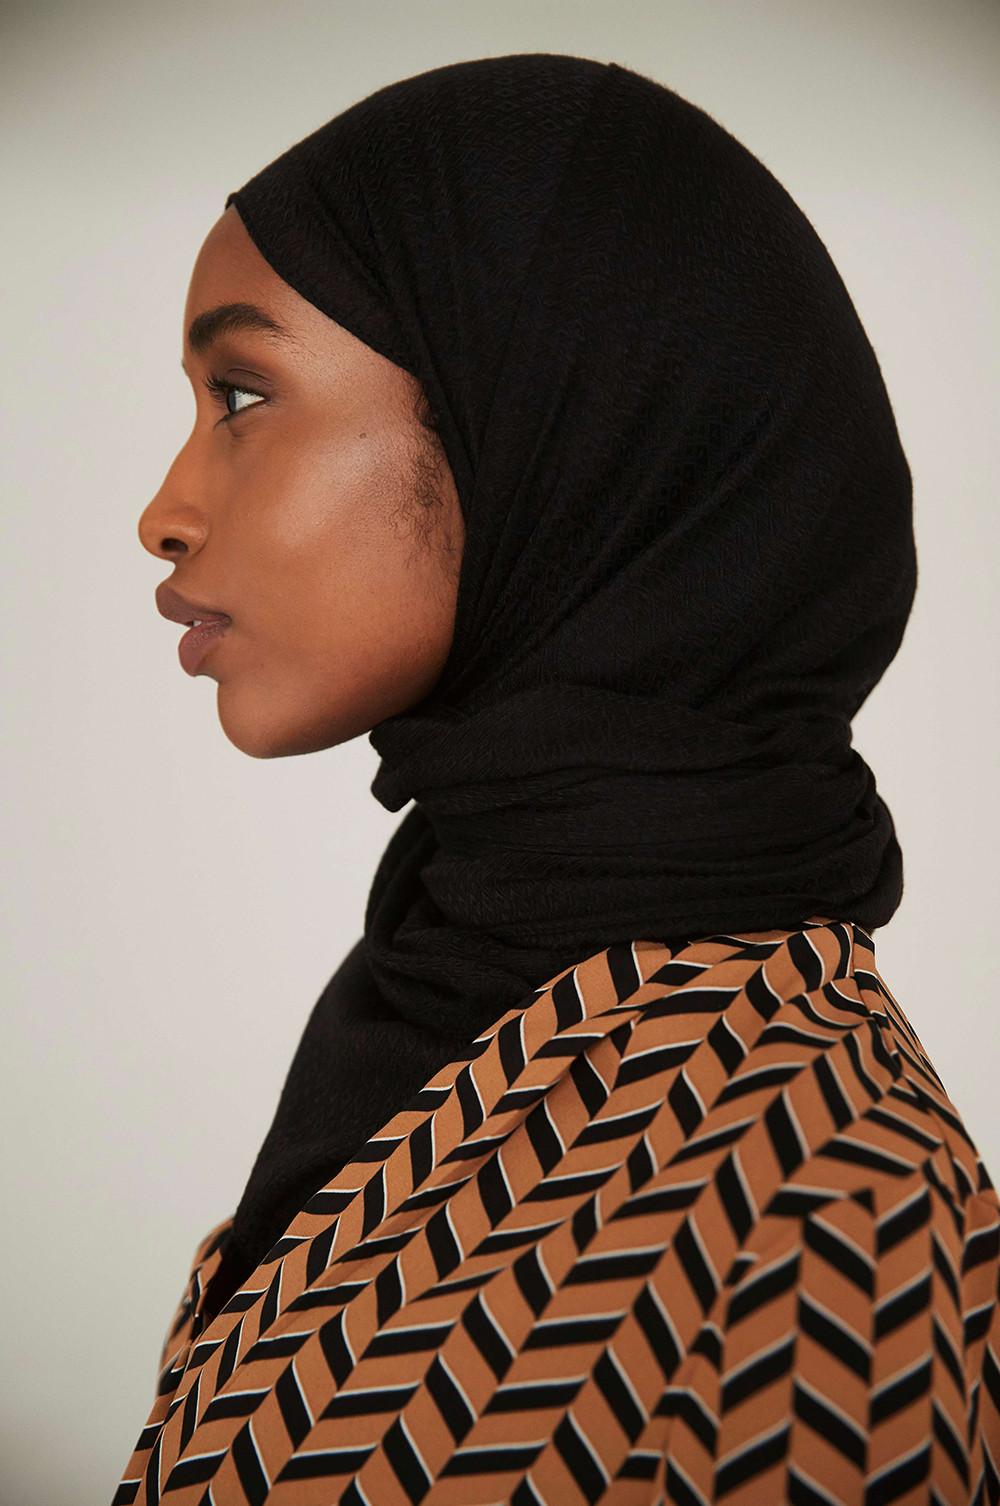 Model wearing dark head scarf